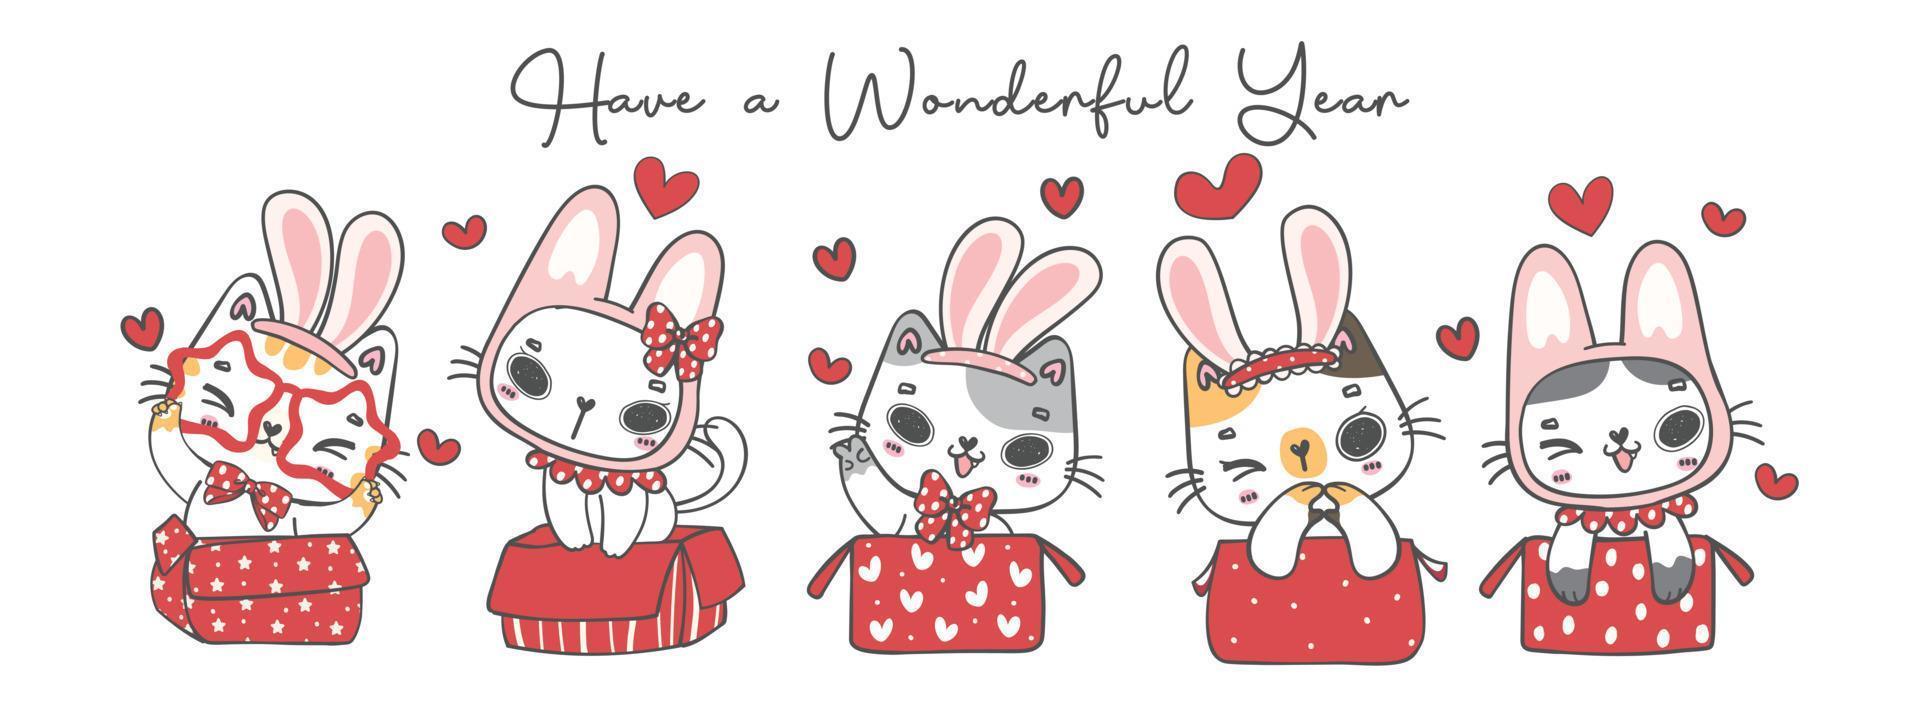 groupe de chats chatons kawaii portant des oreilles de lapin, dans des boîtes rouges, passez une année merveilleuse, personnage de dessin animé animal de compagnie doodle dessin à la main illustration vecteur